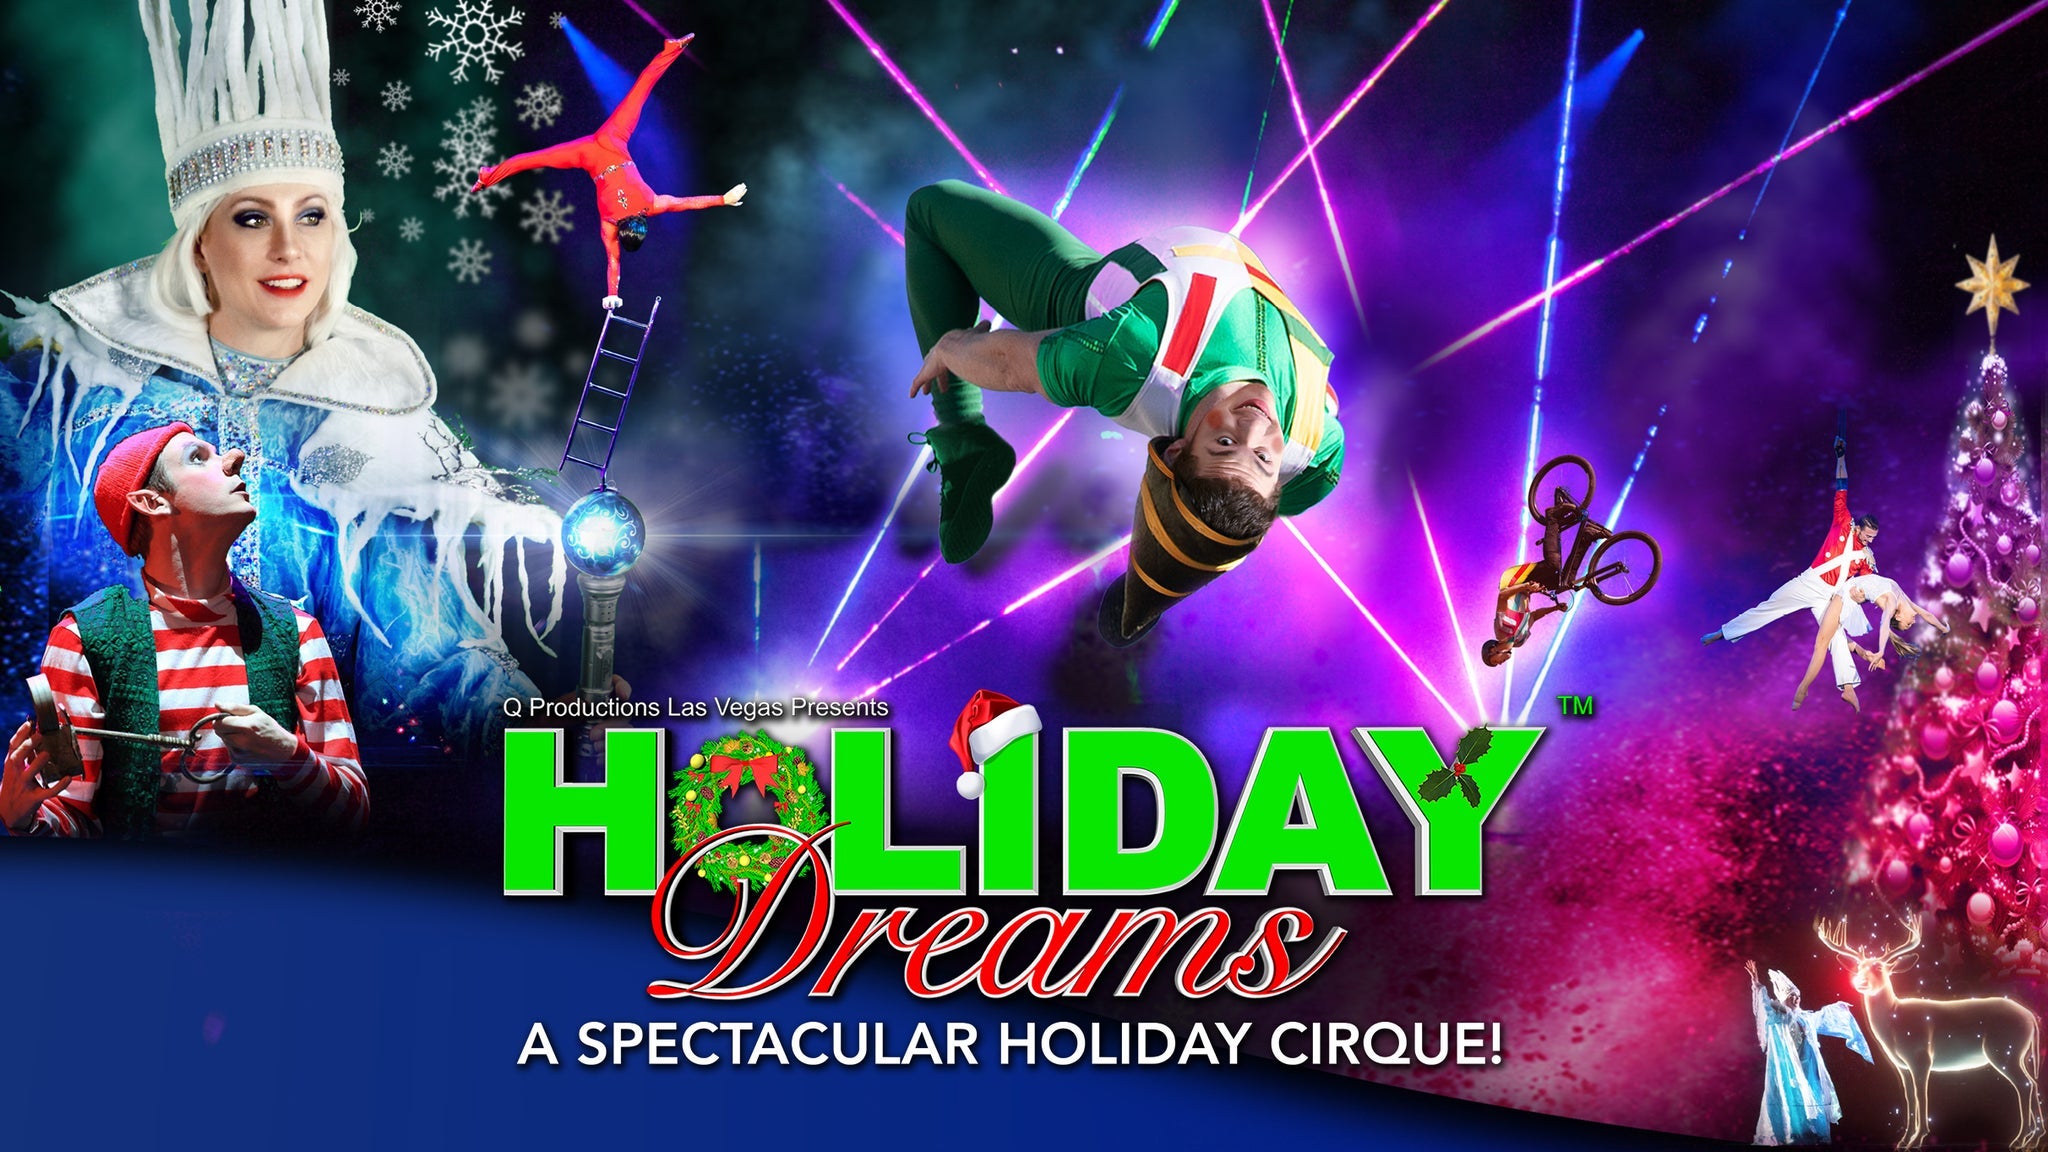 Holiday Dreams, A Spectacular Holiday Cirque! - Huntsville, AL 35801